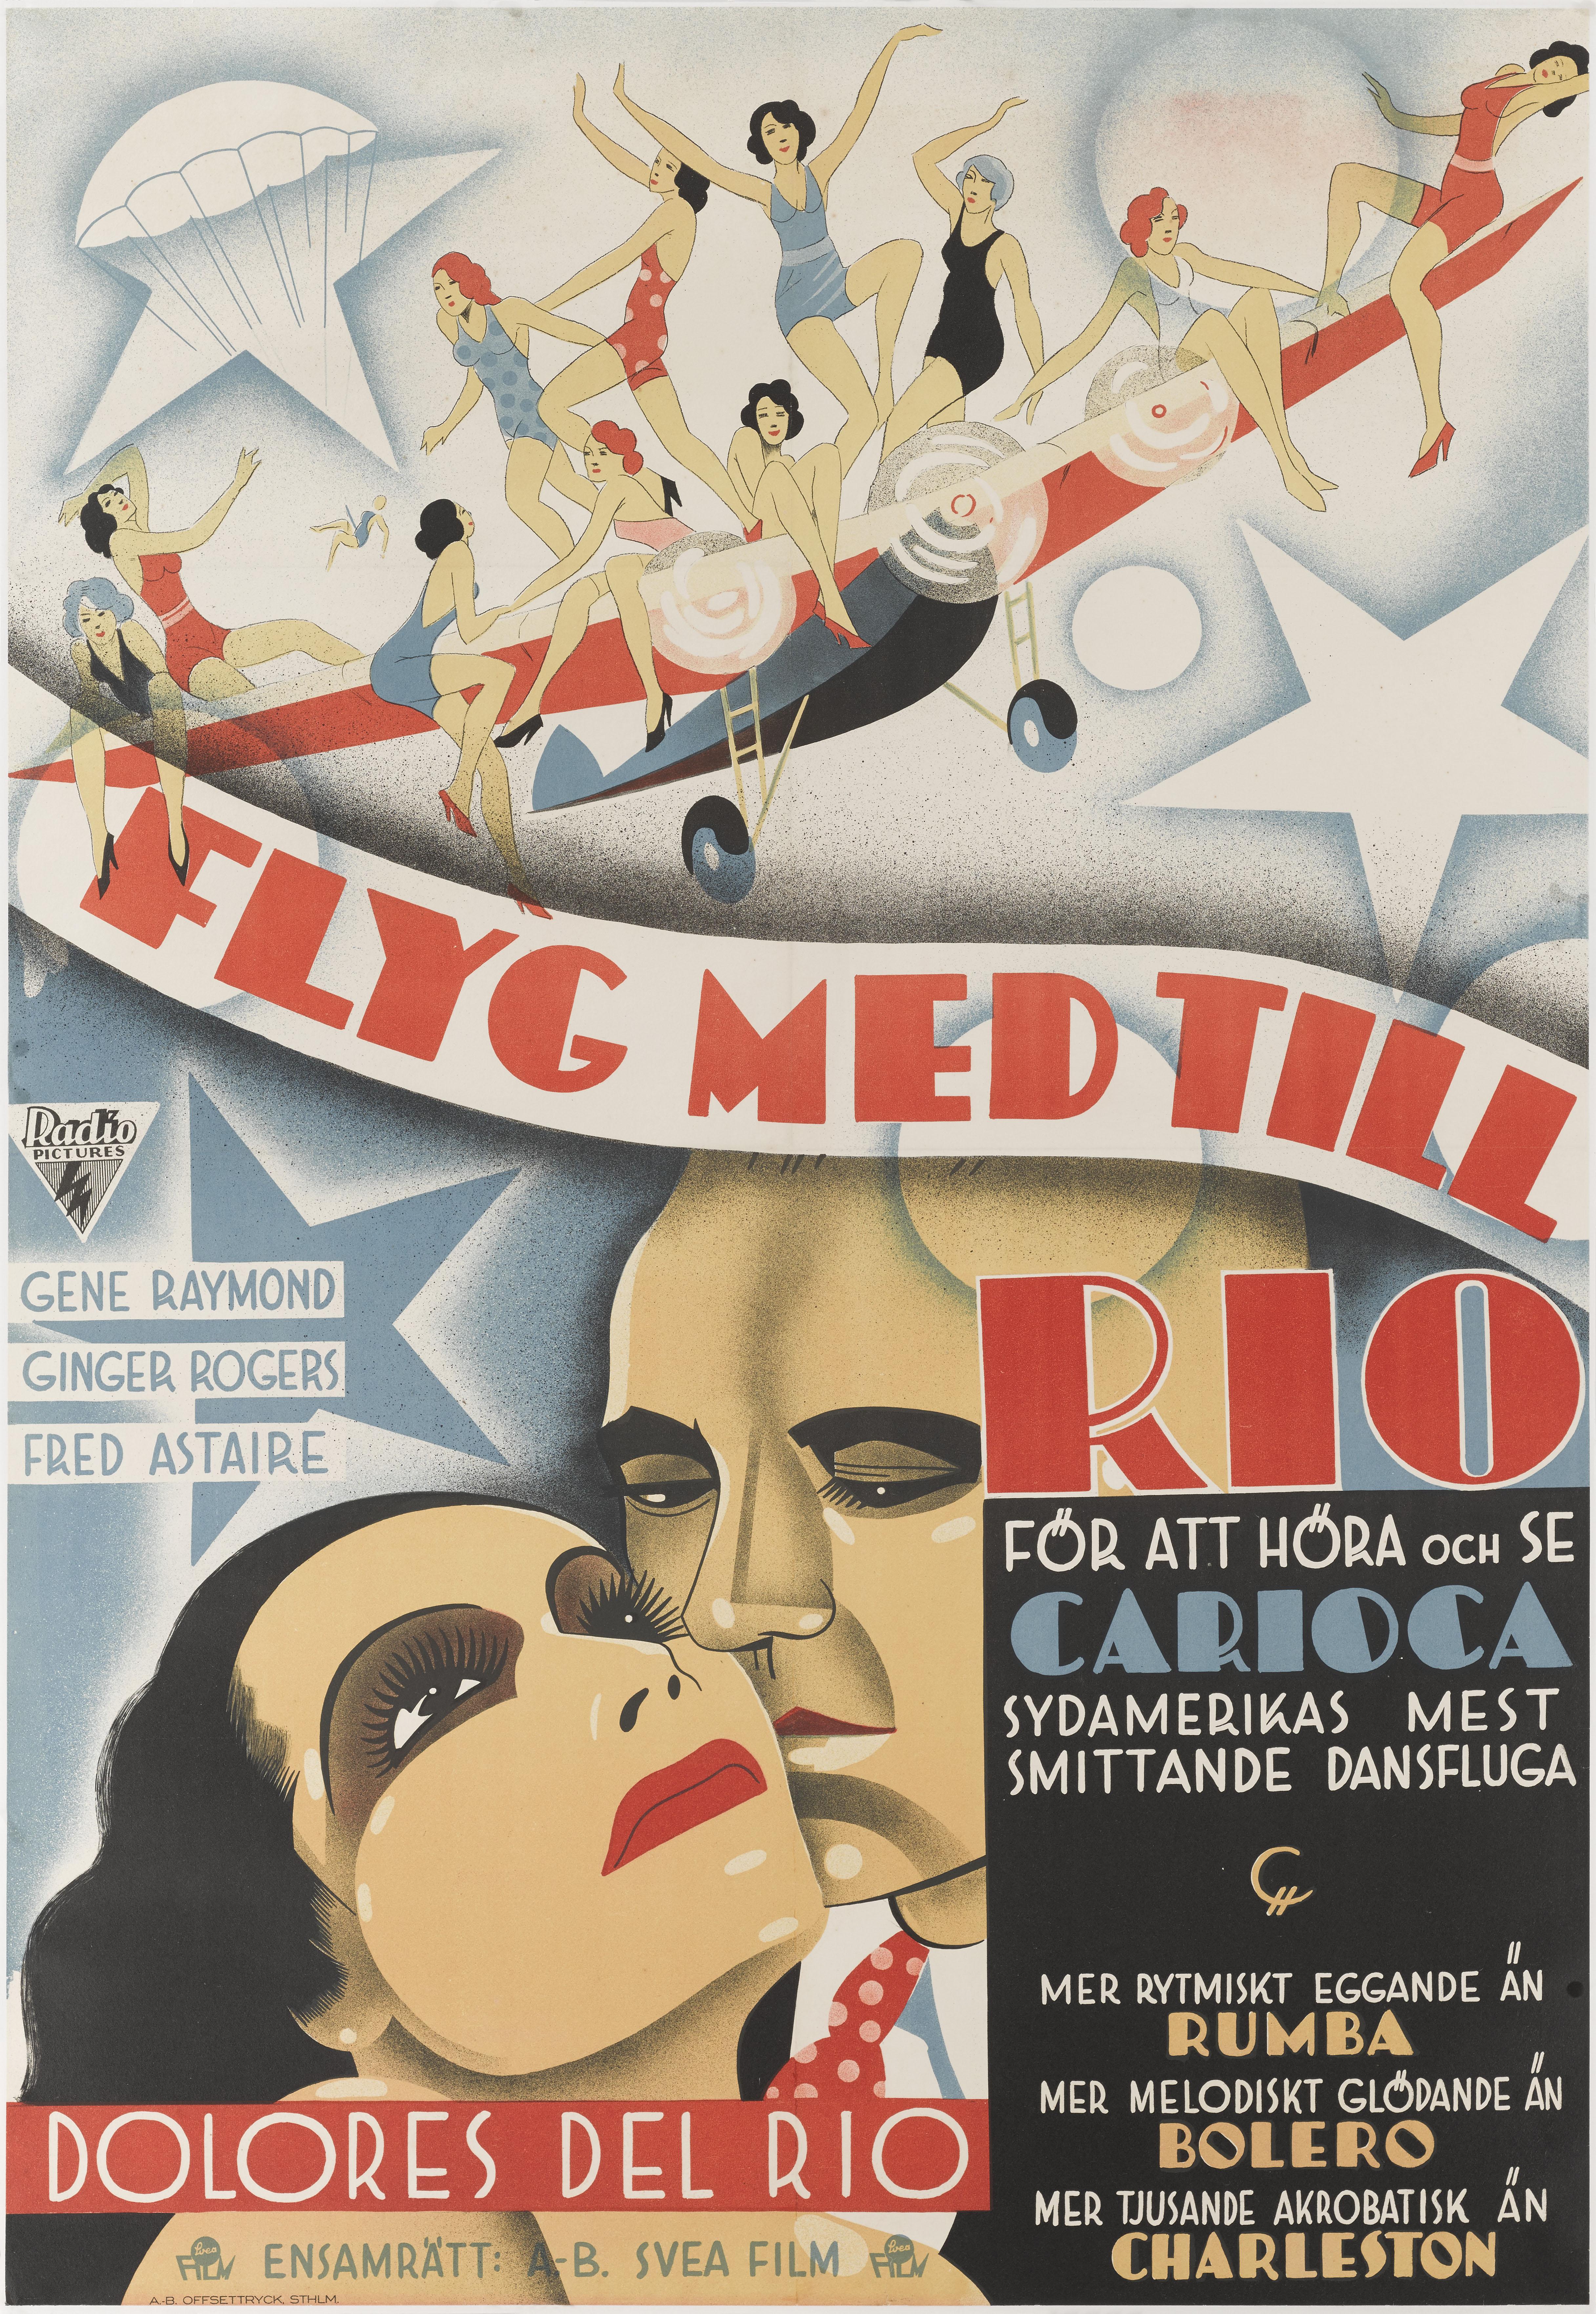 Original schwedisches Filmplakat: Die legendäre Tanzpartnerschaft zwischen
Ginger Rogers und Fred Astaire begannen 1933 mit 